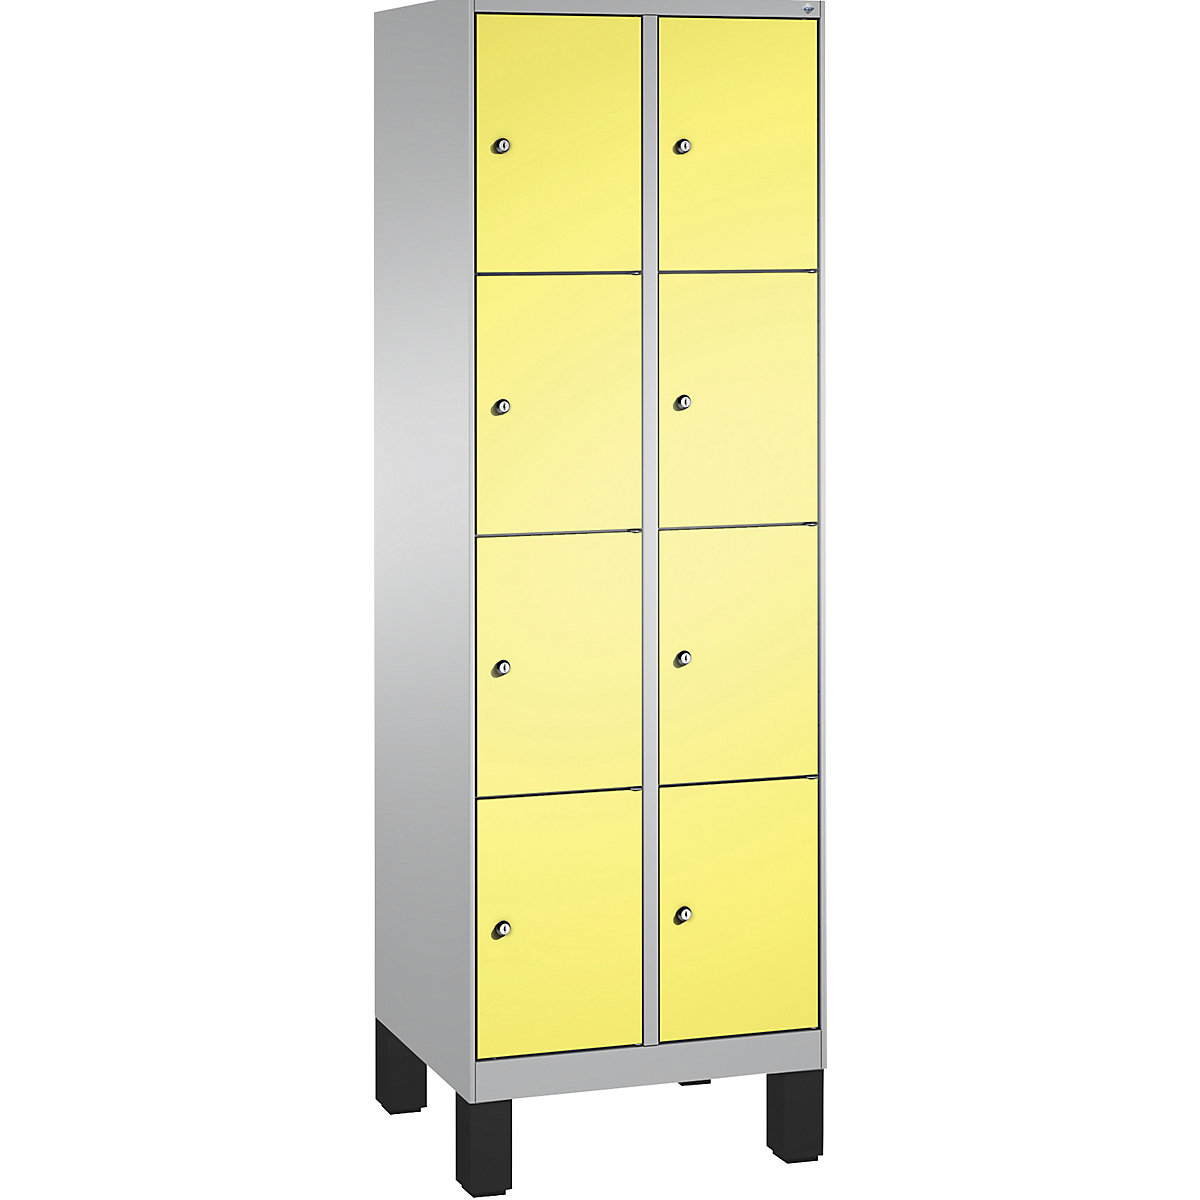 Armoire à casiers sur pieds EVOLO – C+P, 2 compartiments, 4 casiers chacun, largeur compartiments 300 mm, aluminium / jaune soufre-15